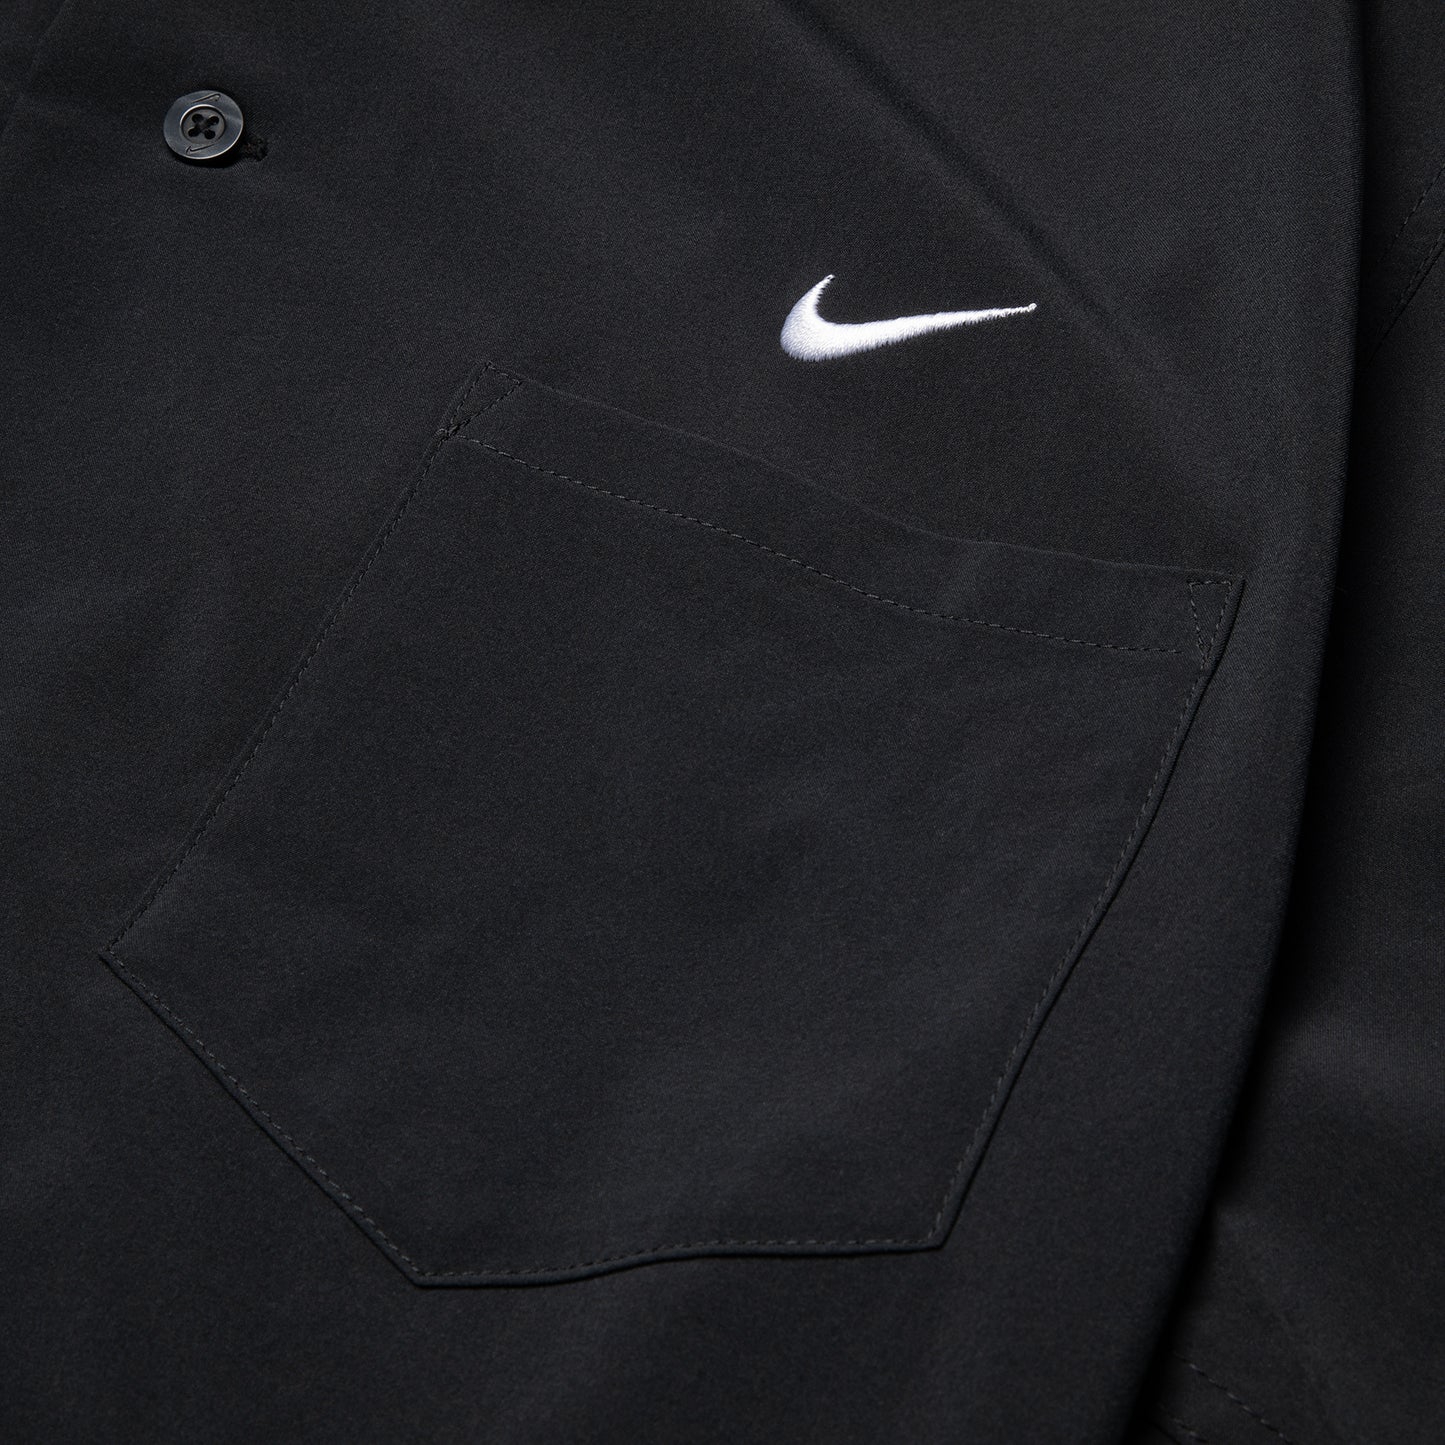 Nike SB Skate Short Sleeve Bowling Shirt (Black/White)